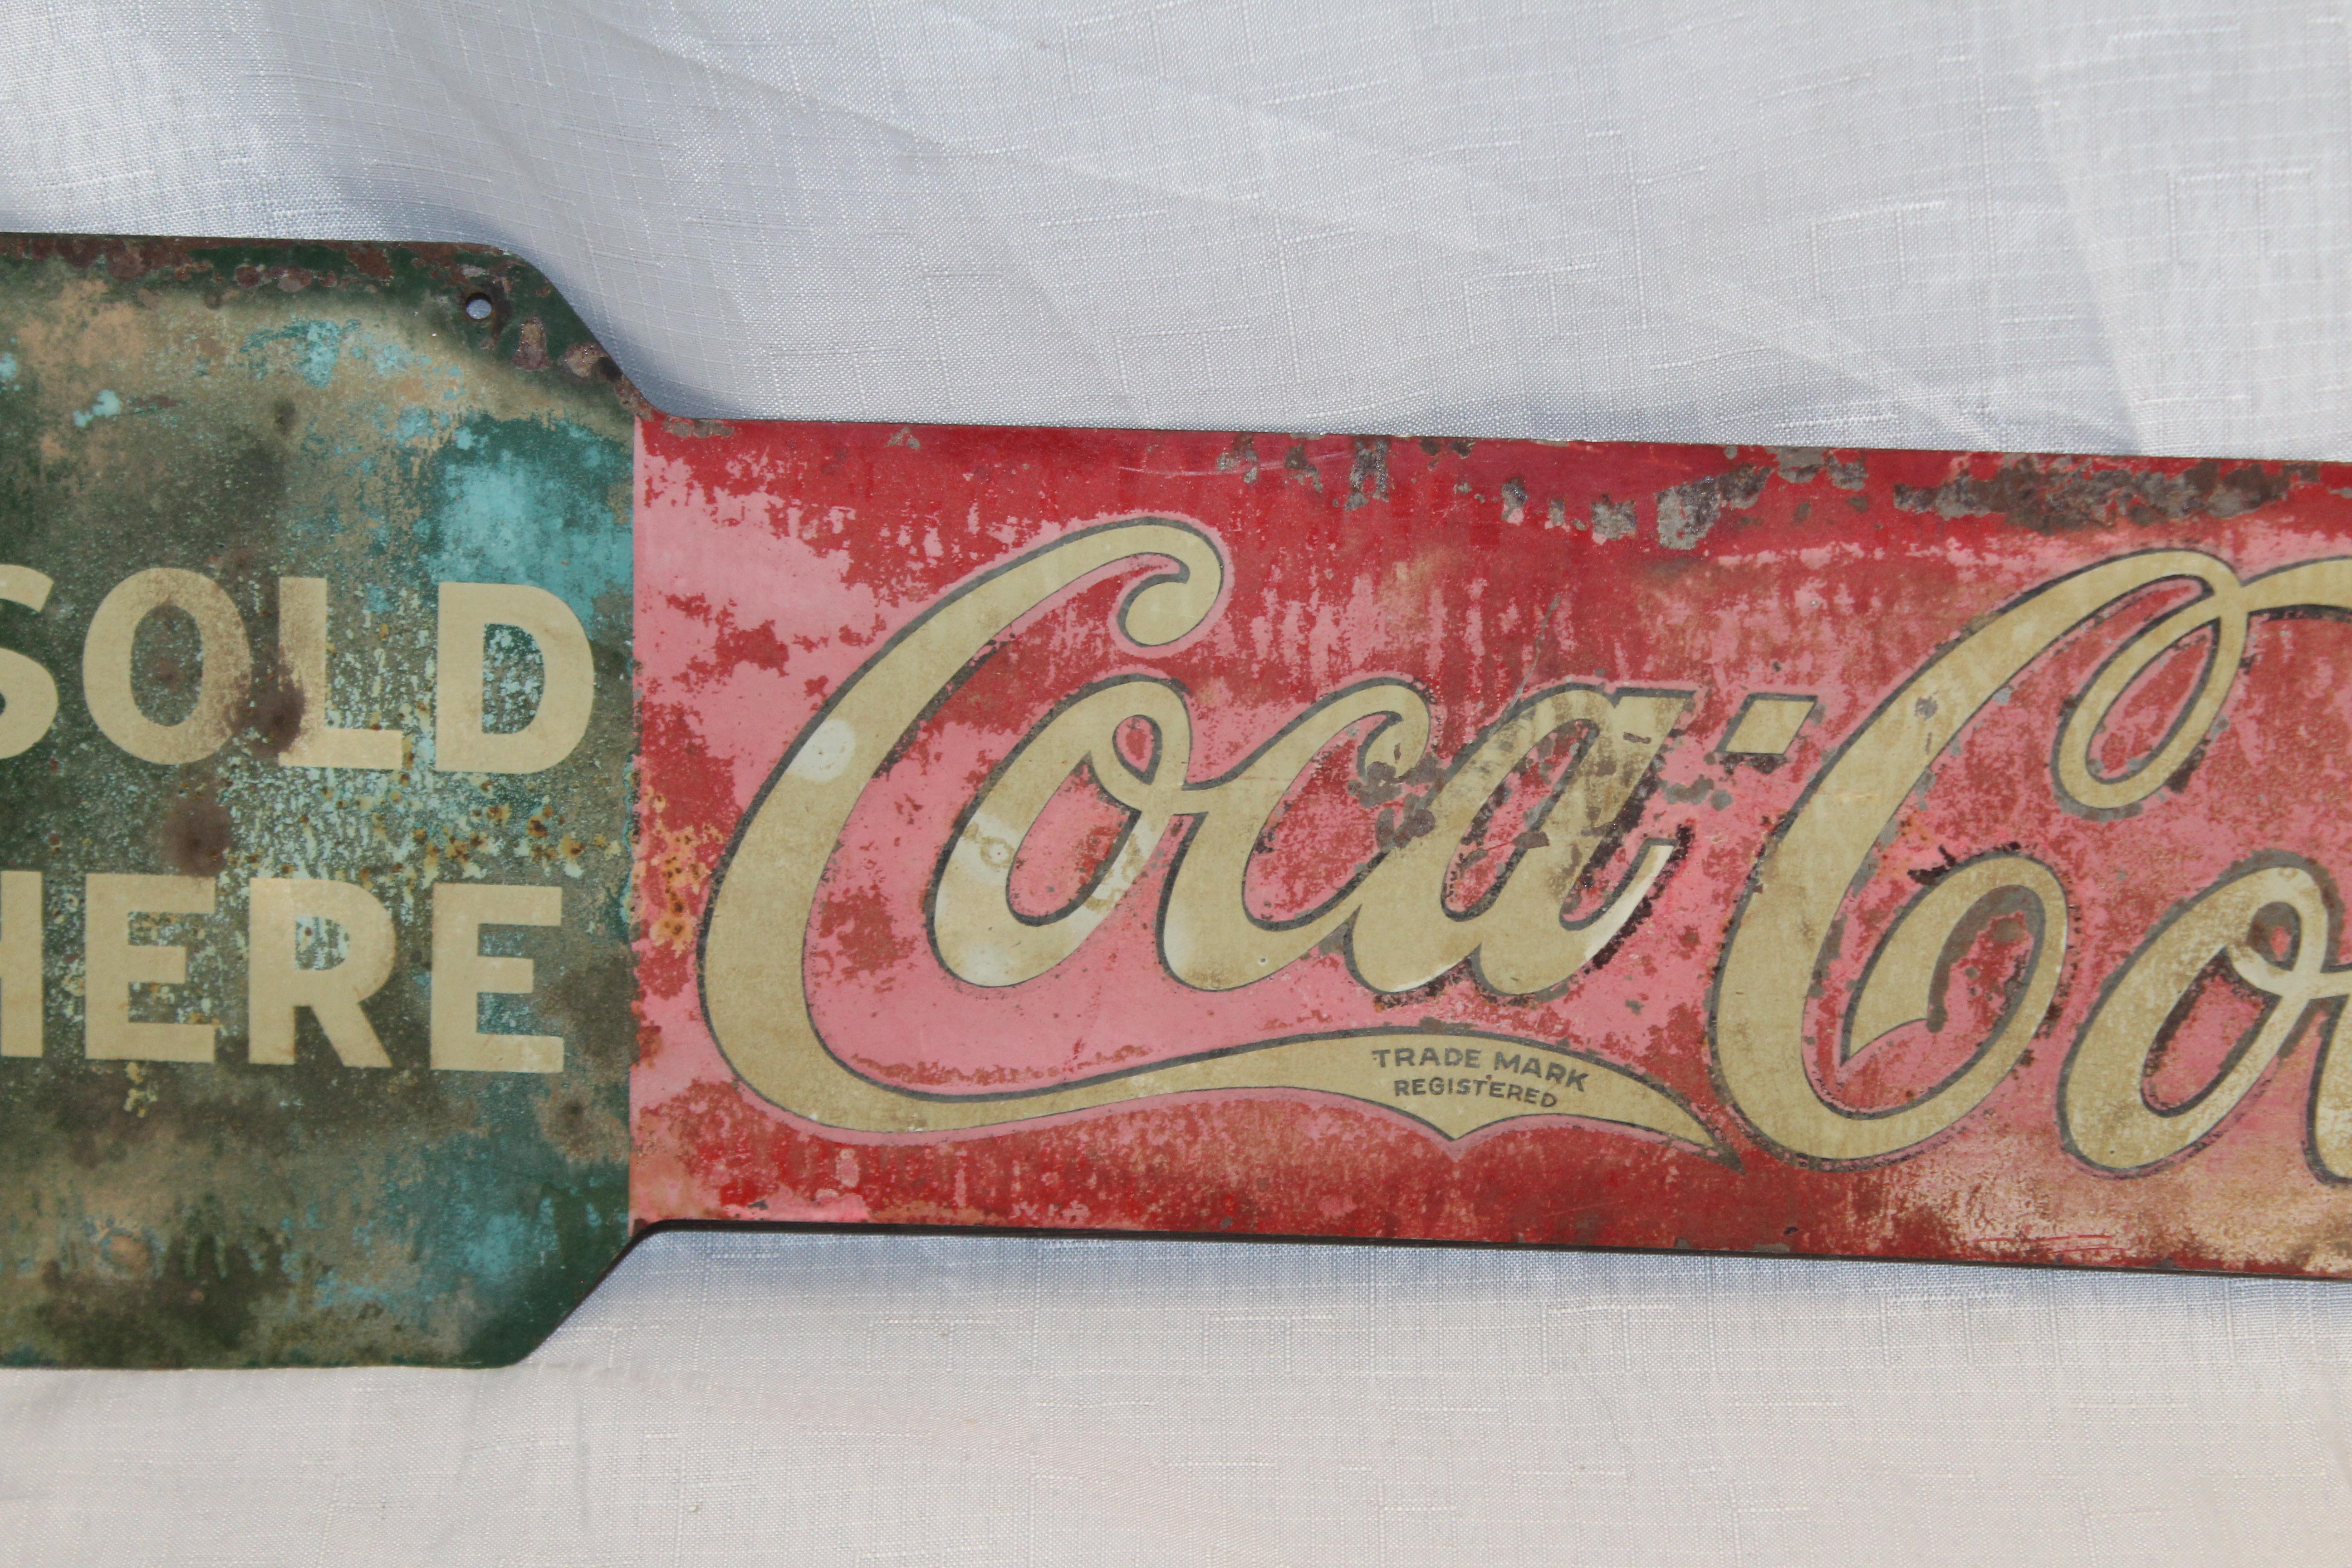 1927 coca cola sign